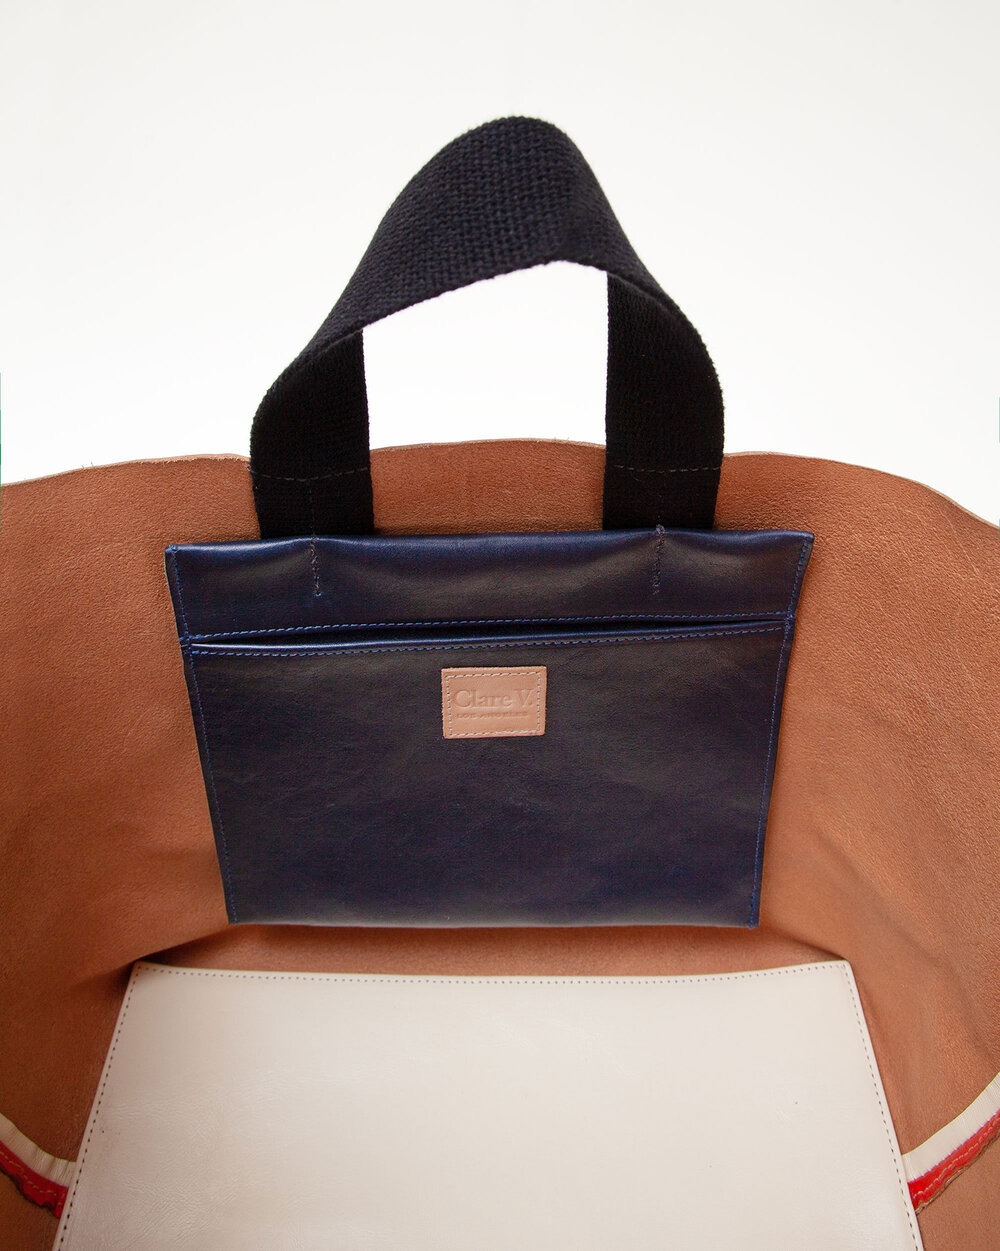 Clare V. Bateau Woven Leather Tote Bag